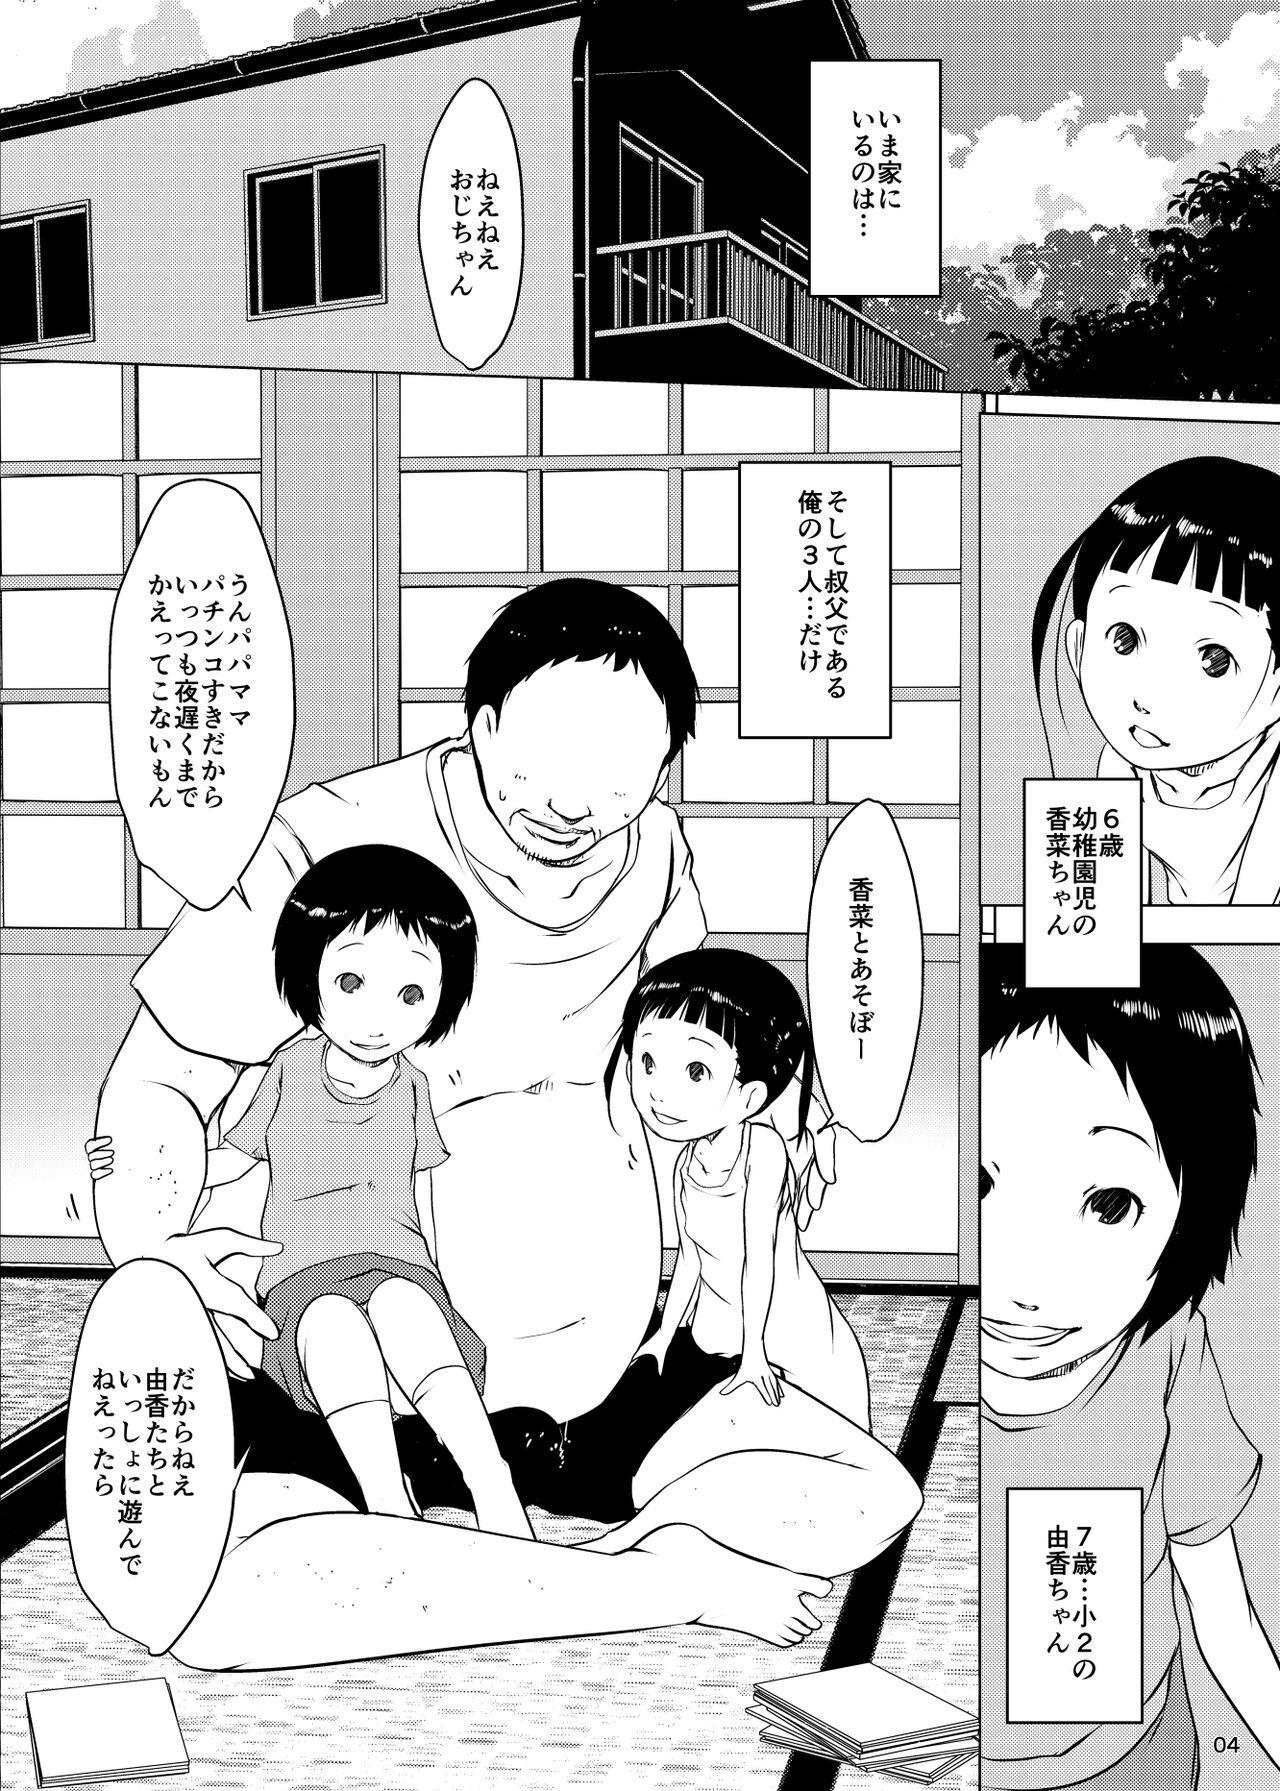 Little Jian Hassei Re:05 + Jian Hassei Puni Pedo Kindergarten 2022 Gay Domination - Picture 3